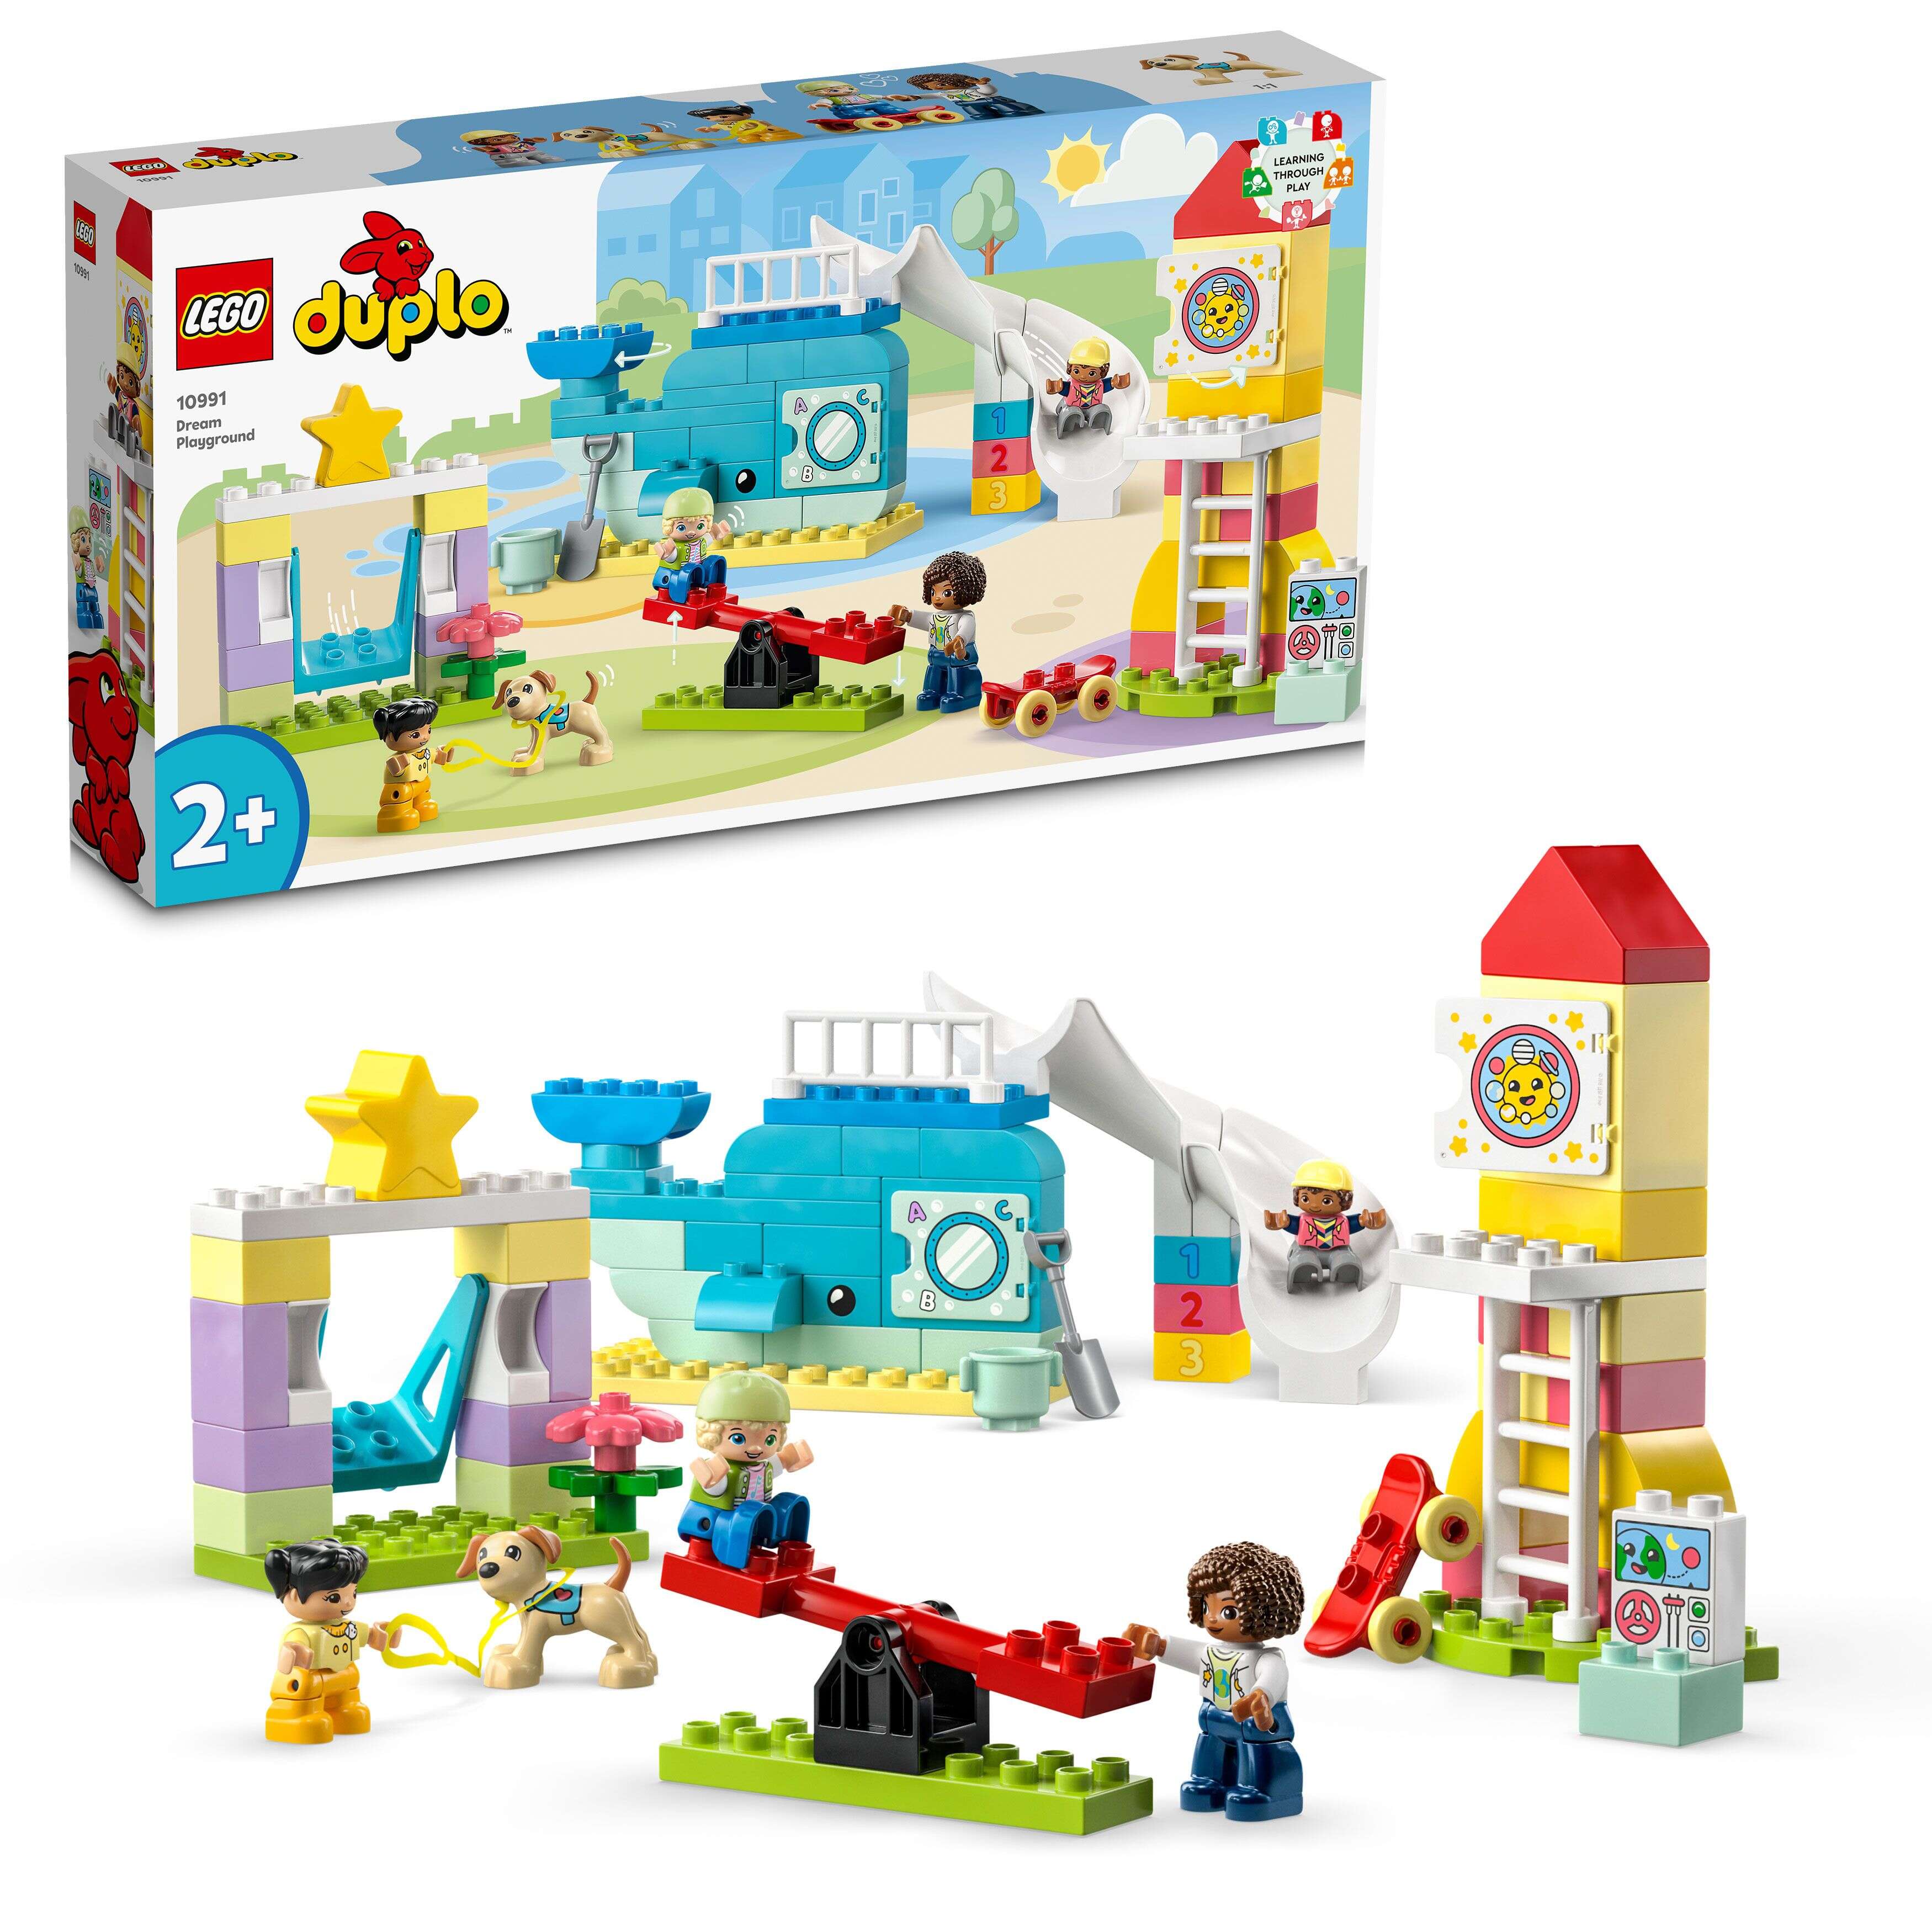 LEGO 10991 DUPLO Traumspielplatz, 5 Figuren, Karussel, Rutsche, Schaukel